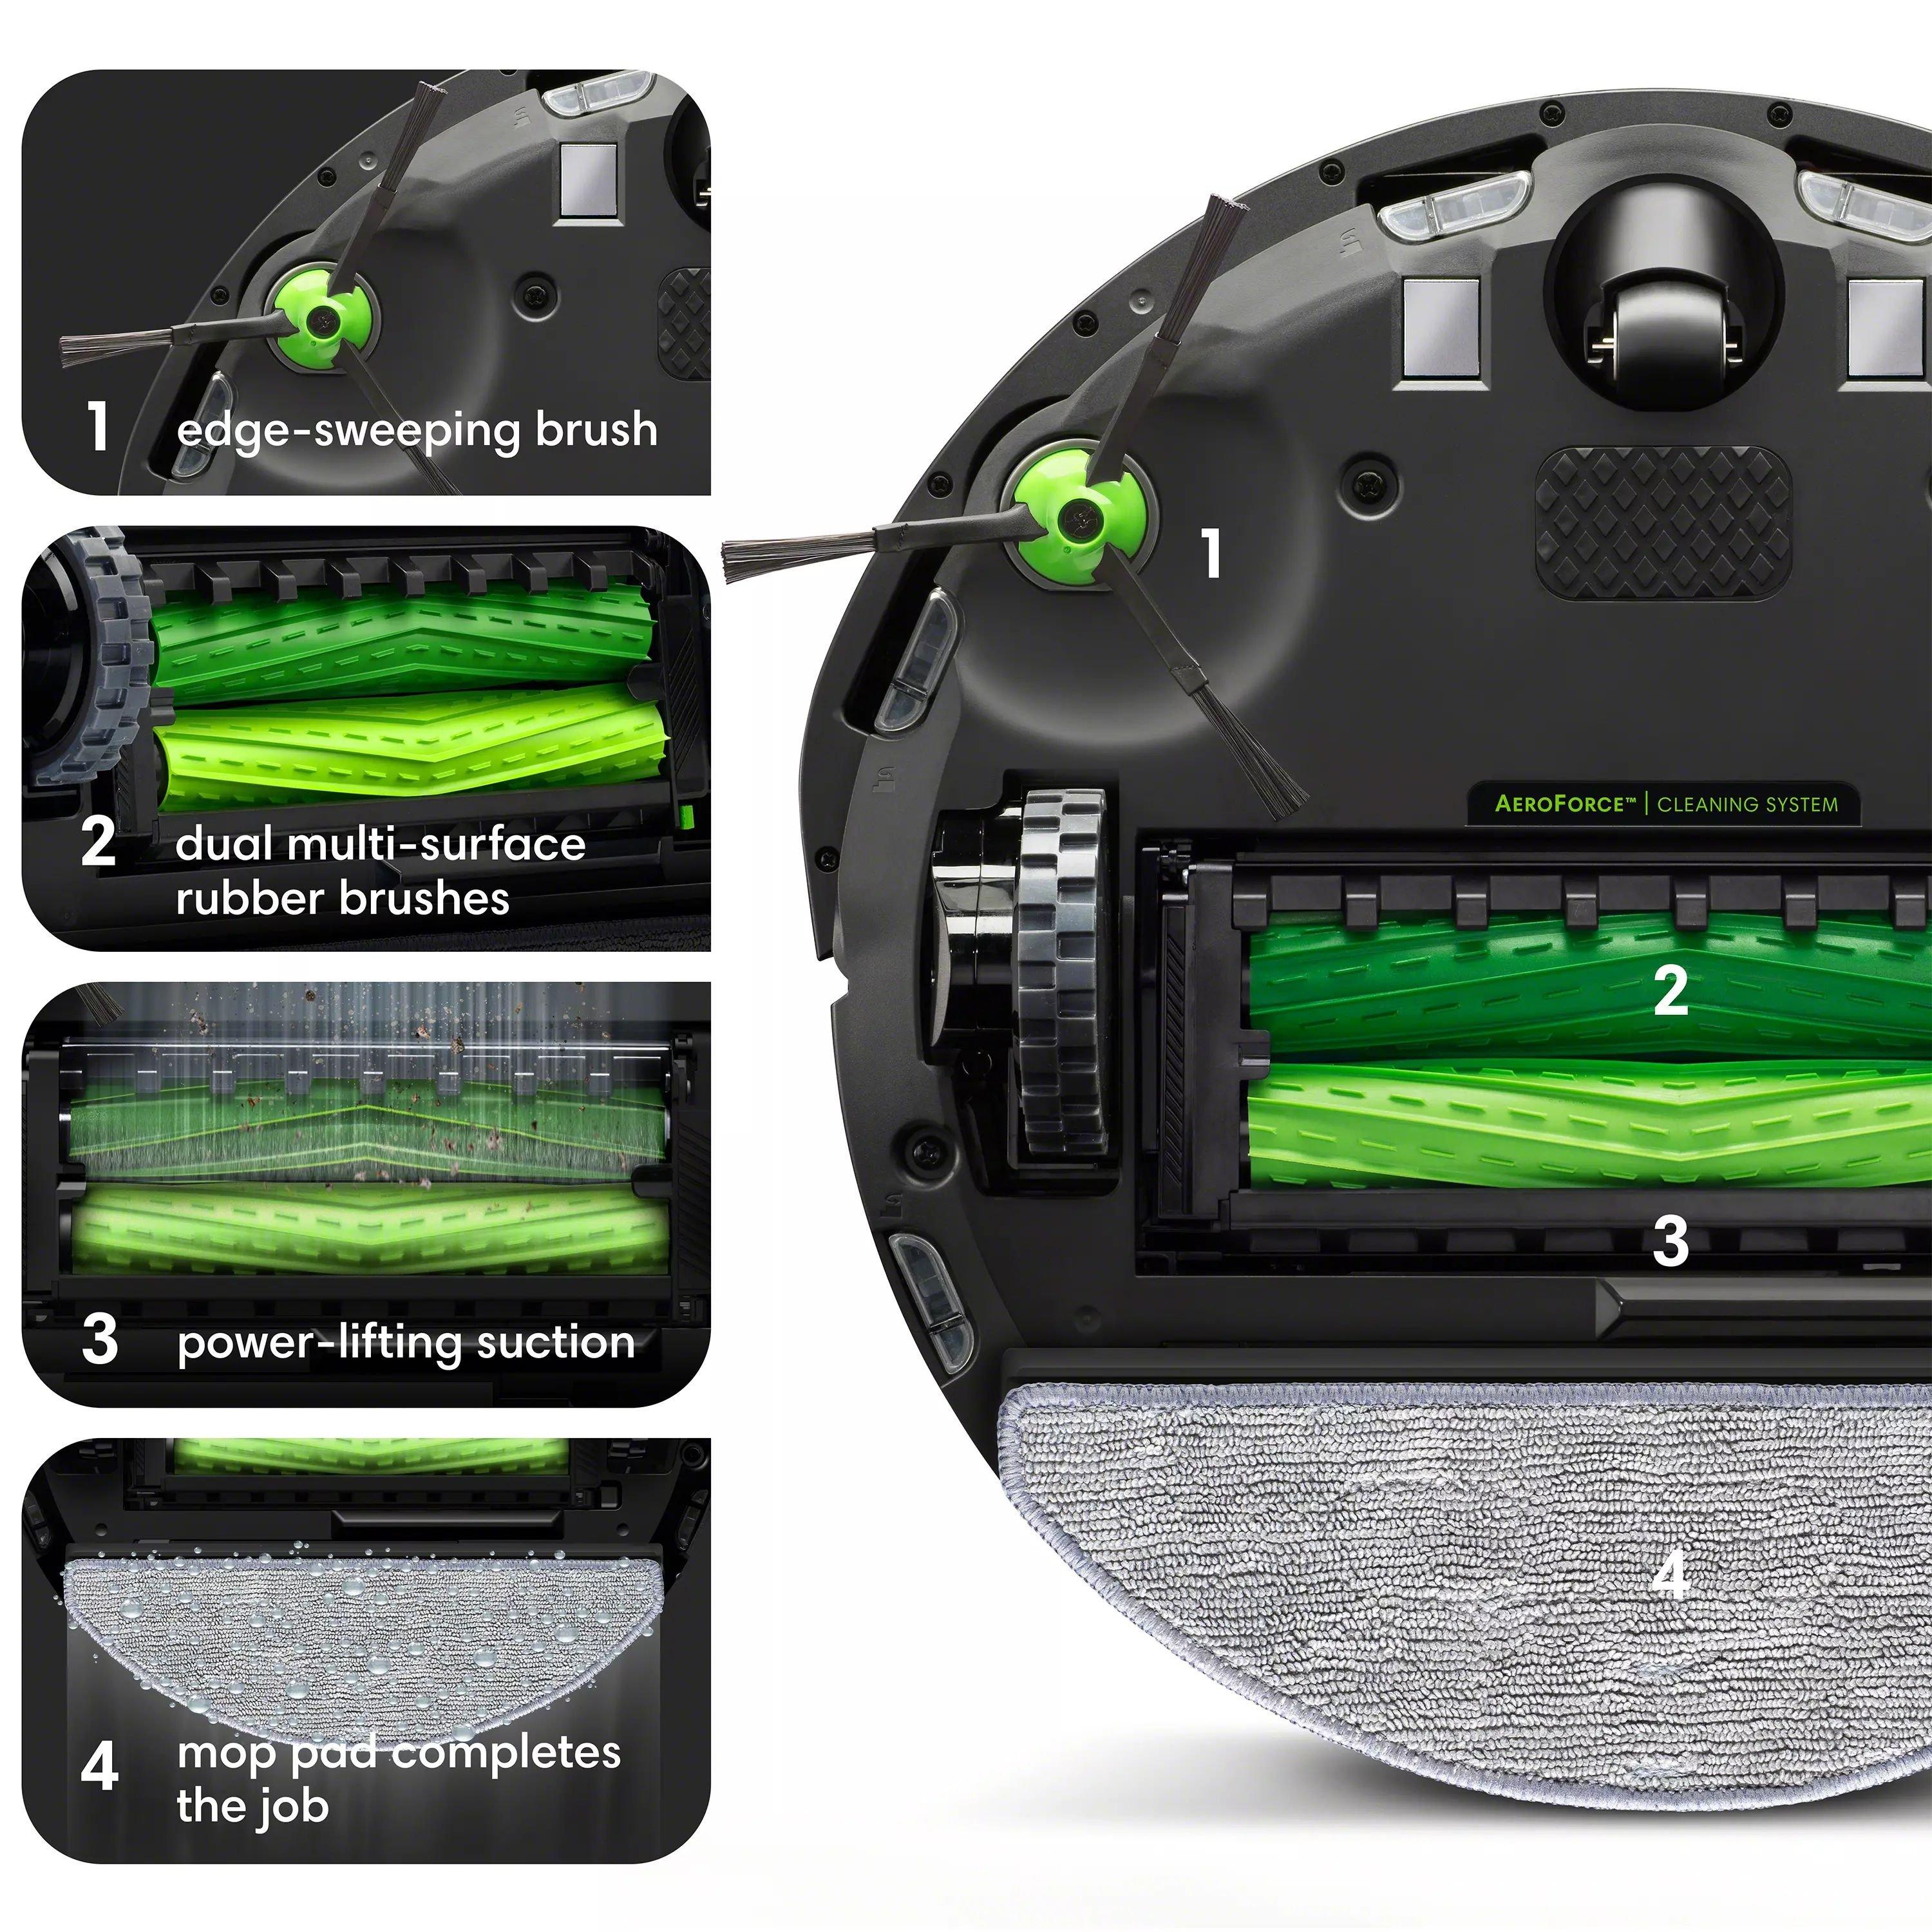 Robot Aspirador iRobot Roomba Combo J5+ - Comprar al mejor precio